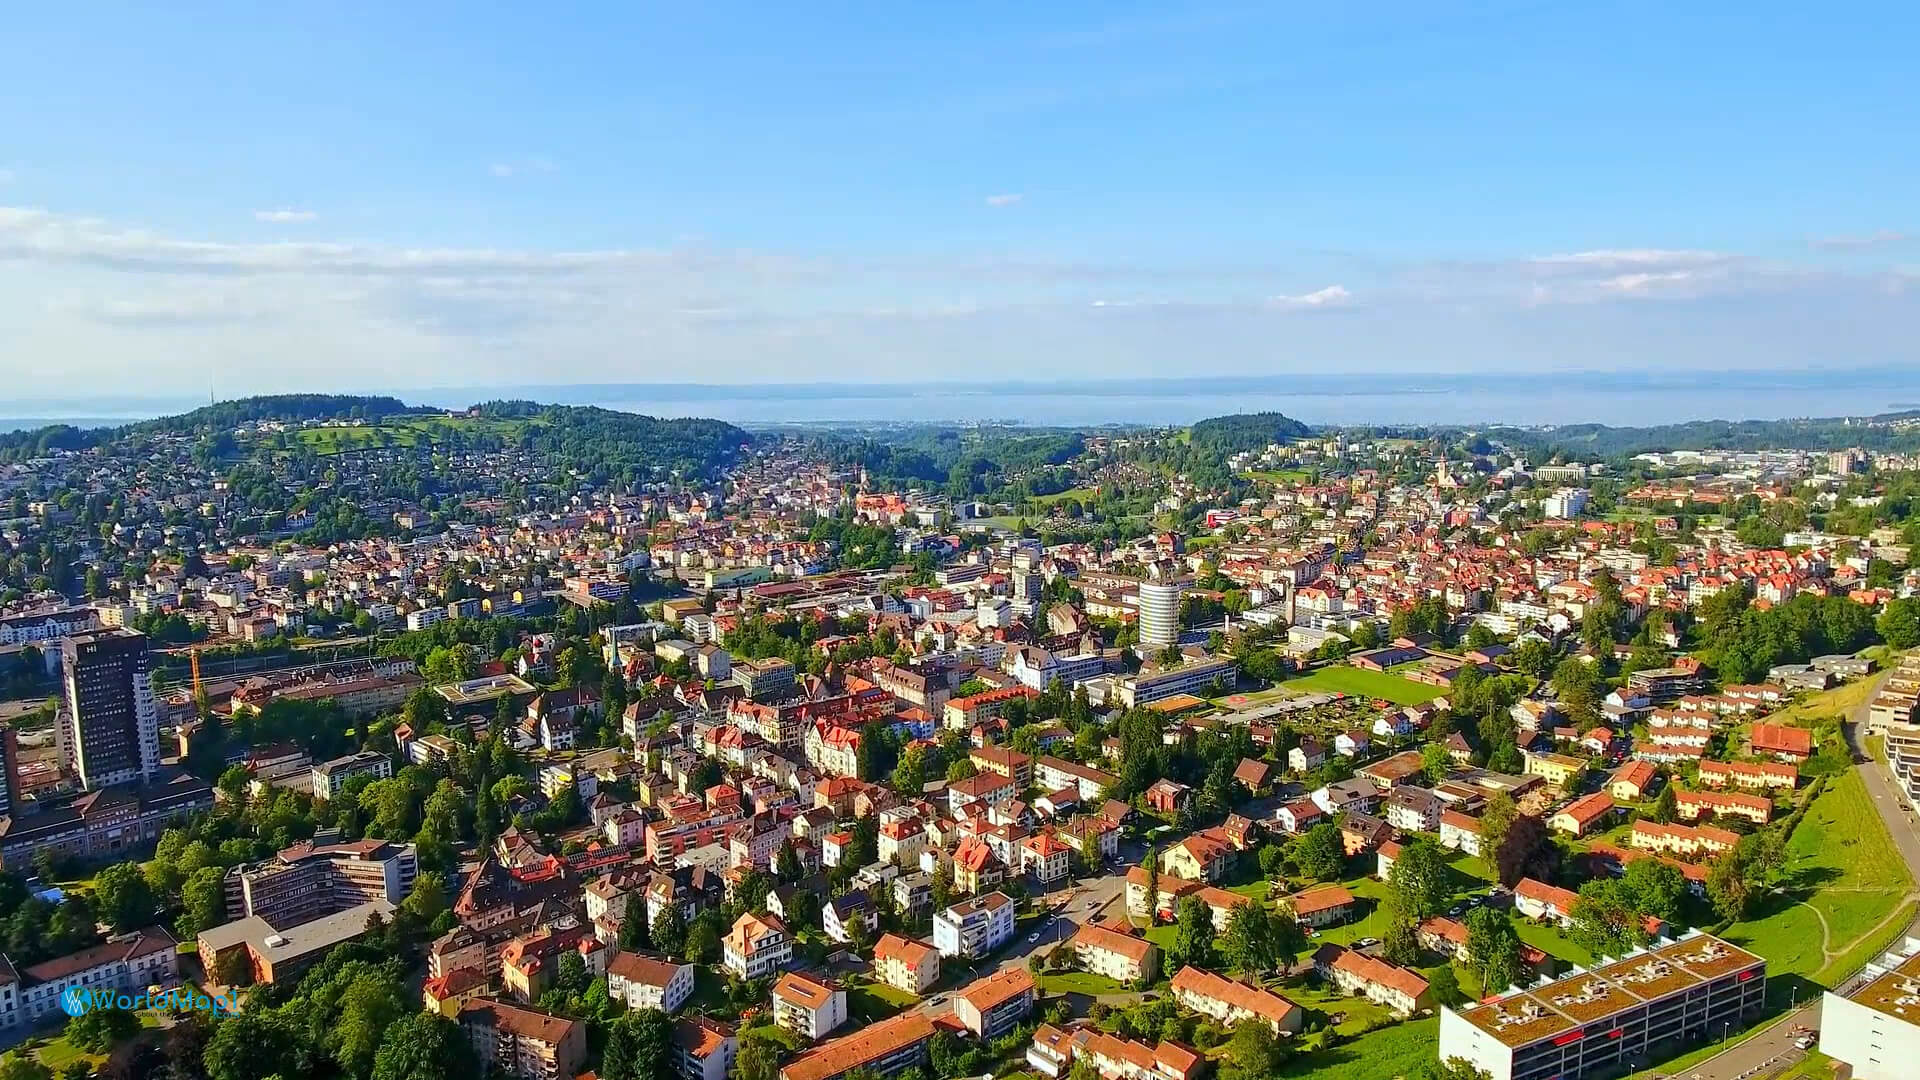 A view of St. Gallen in Switzerland